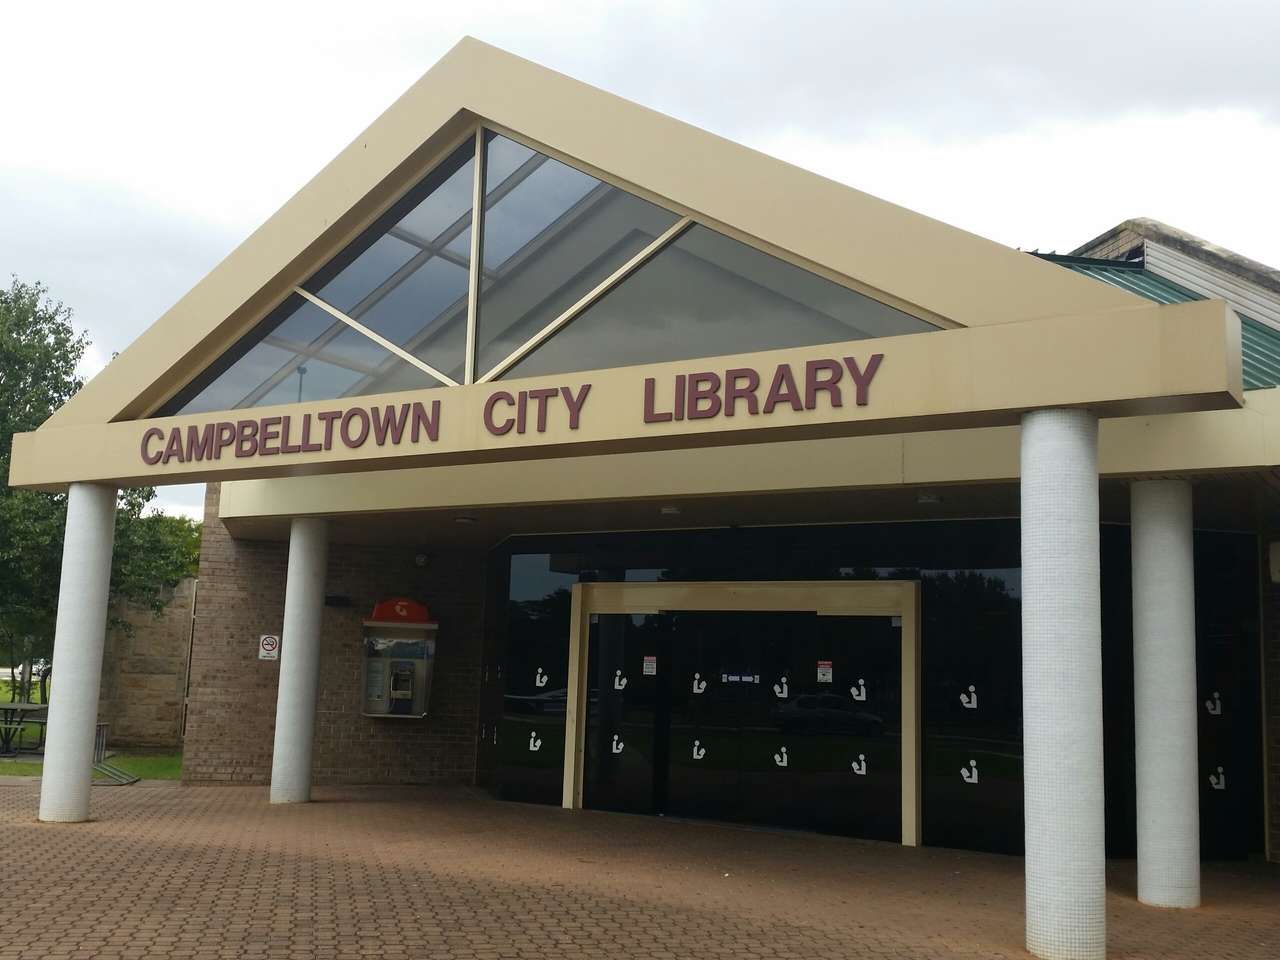 Градската библиотека на Кембълтаун онлайн пъзел